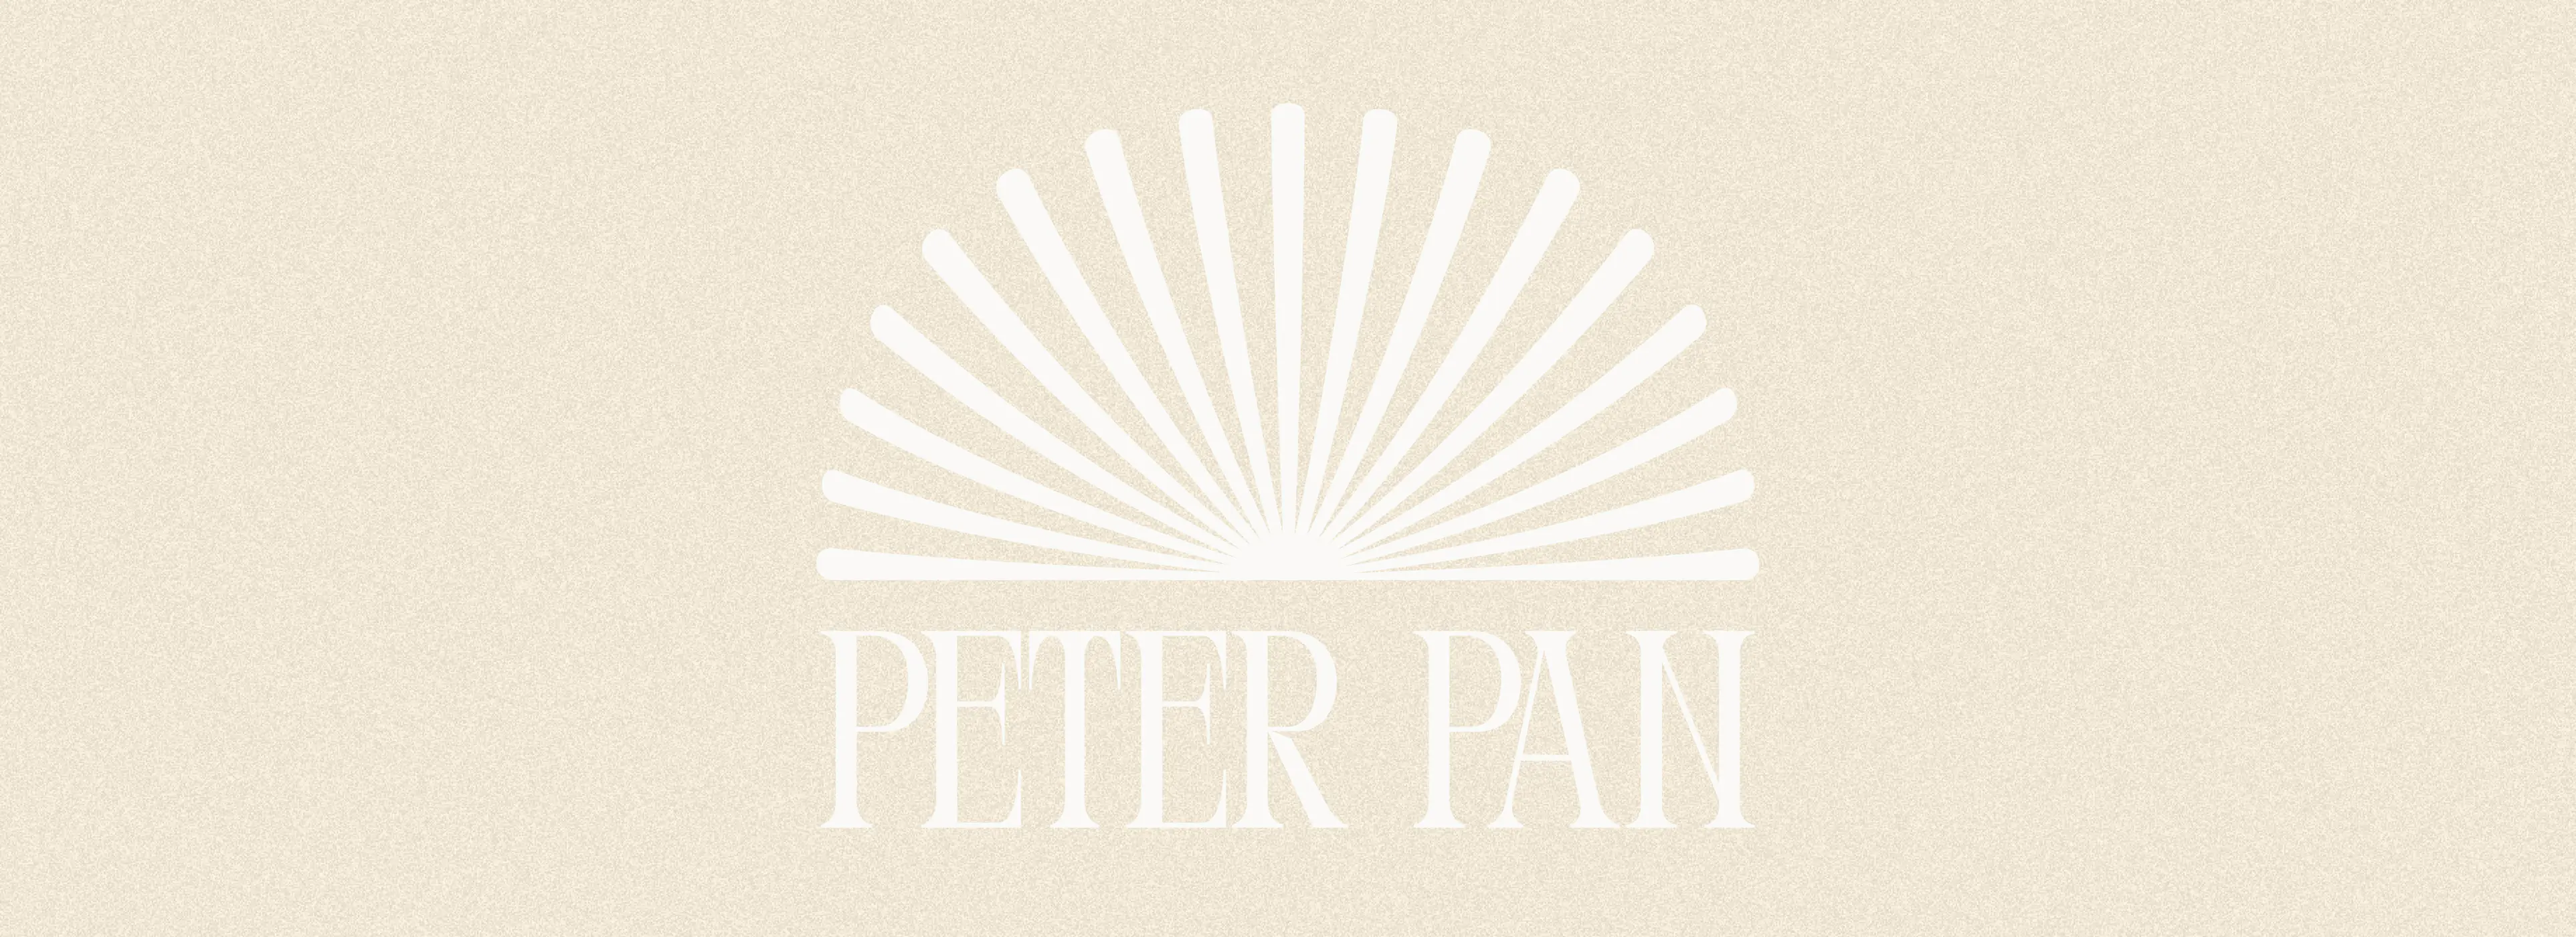 Rebranding Peter Pan, il progetto di tesi in 